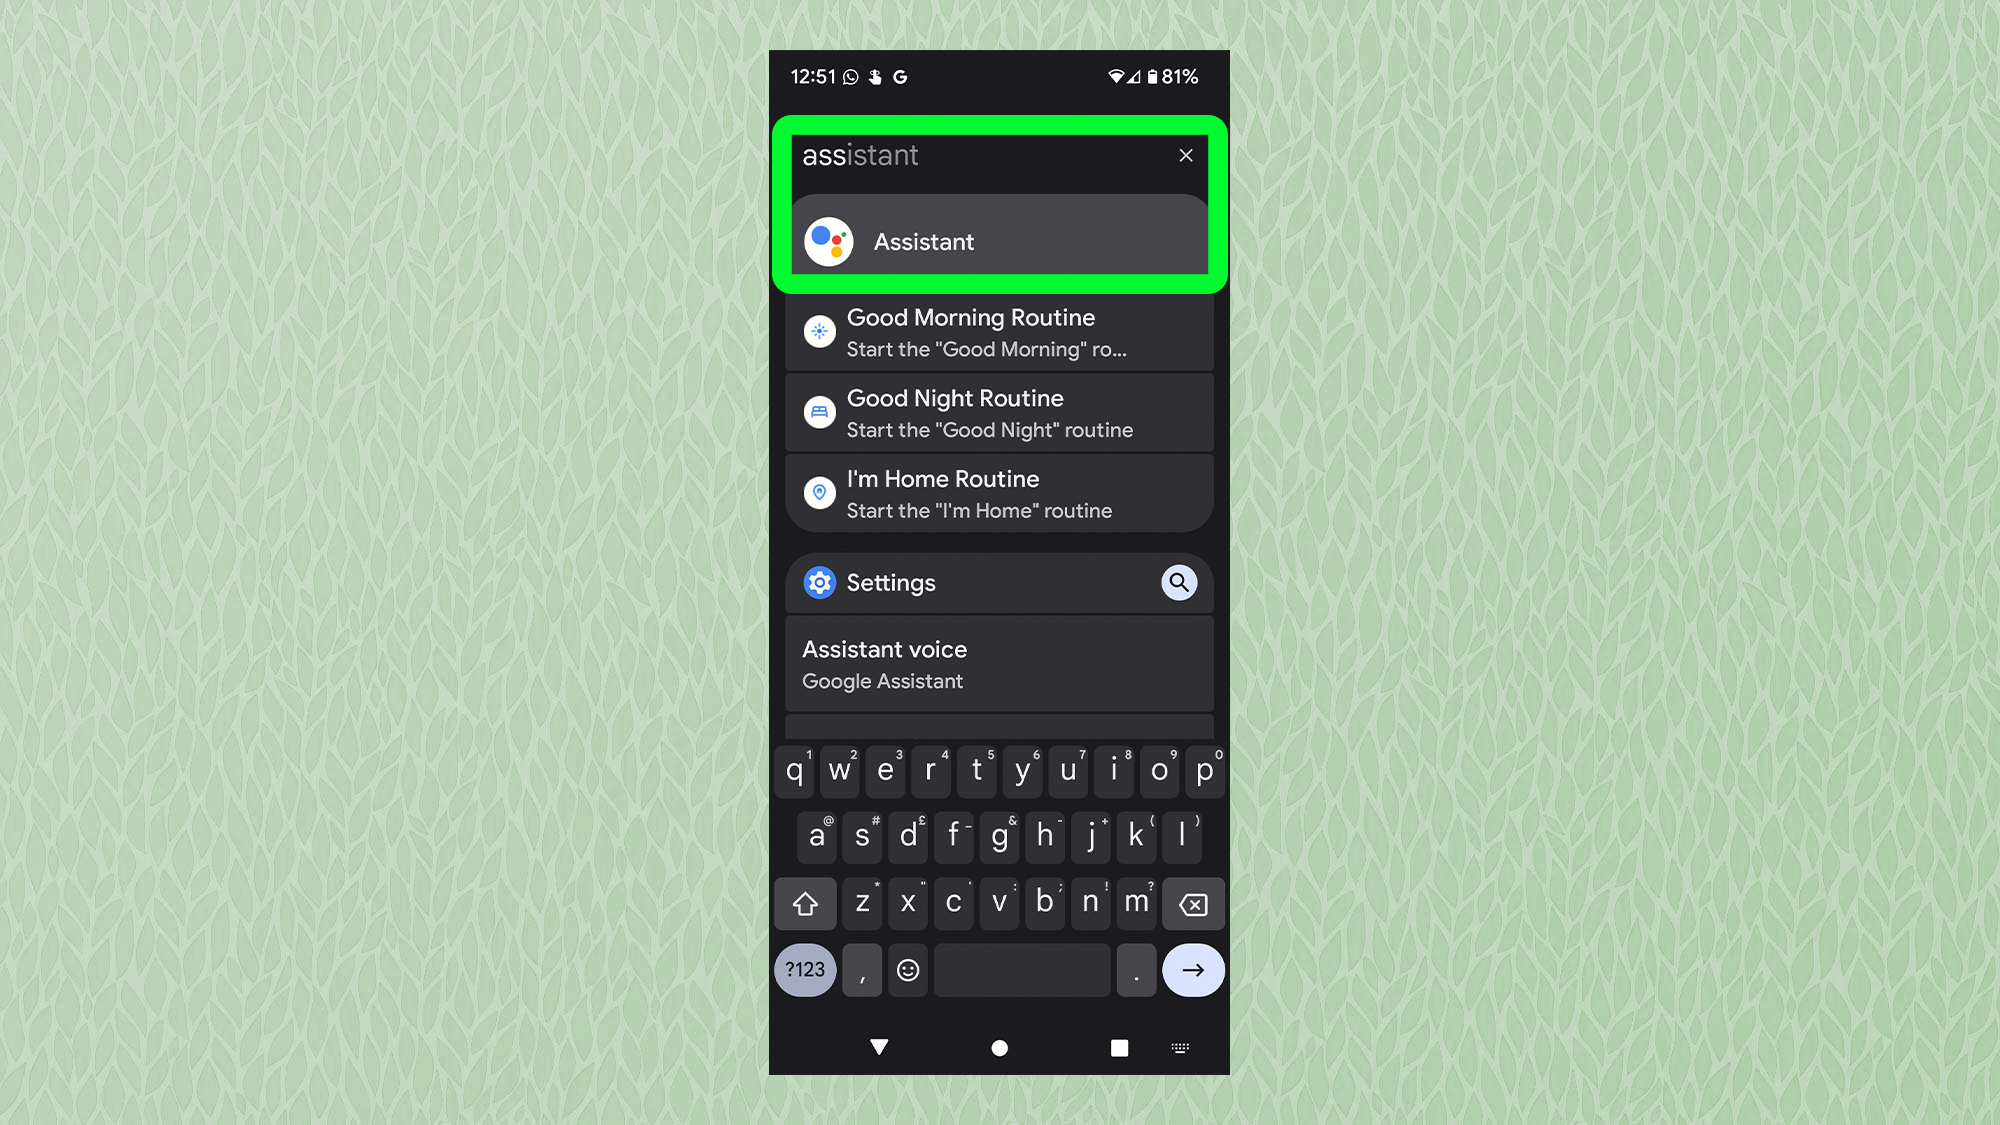 Снимок экрана с Android, показывающий ящик приложения с вводимым помощником